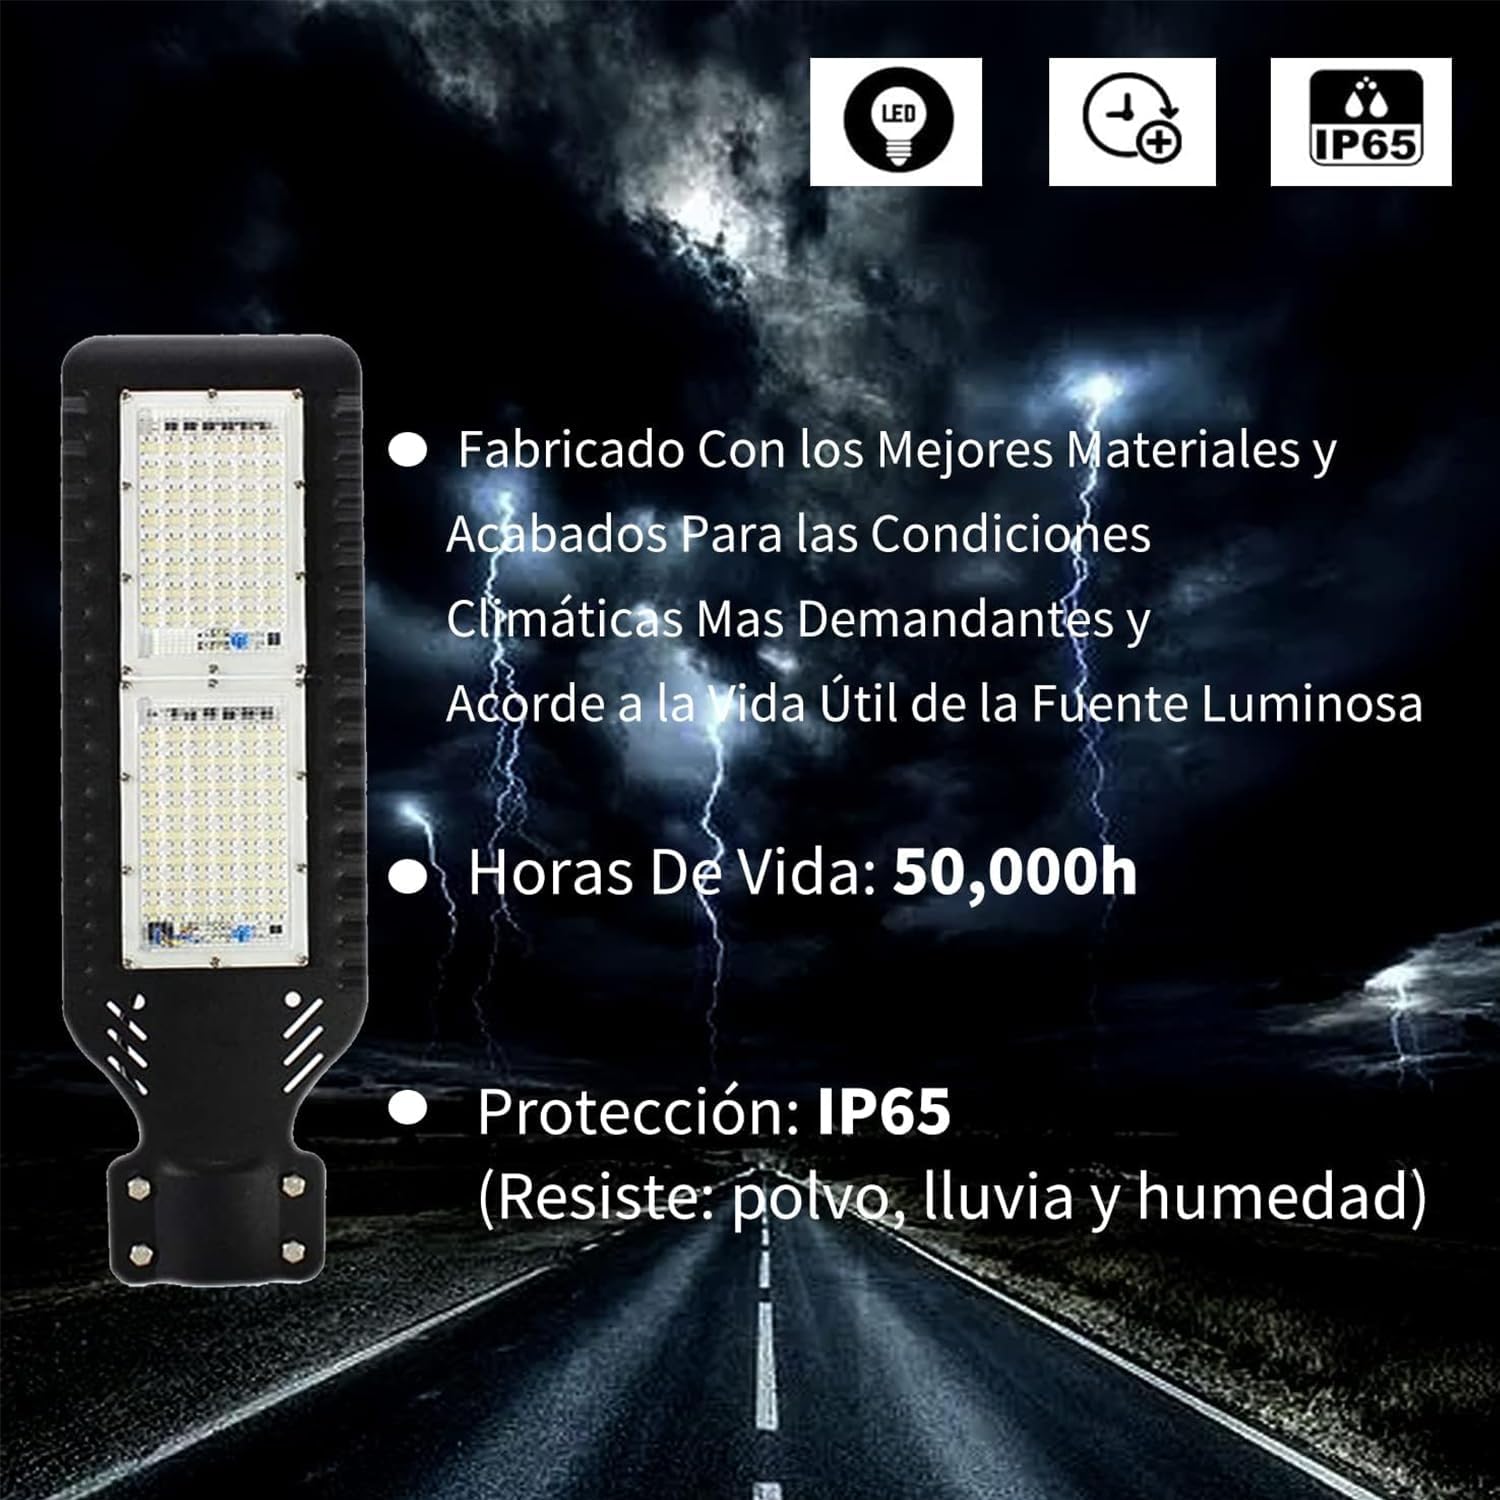 Reflector LED Tianlai Tlap-02 100W con luz blanco frío y carcasa negro 127V